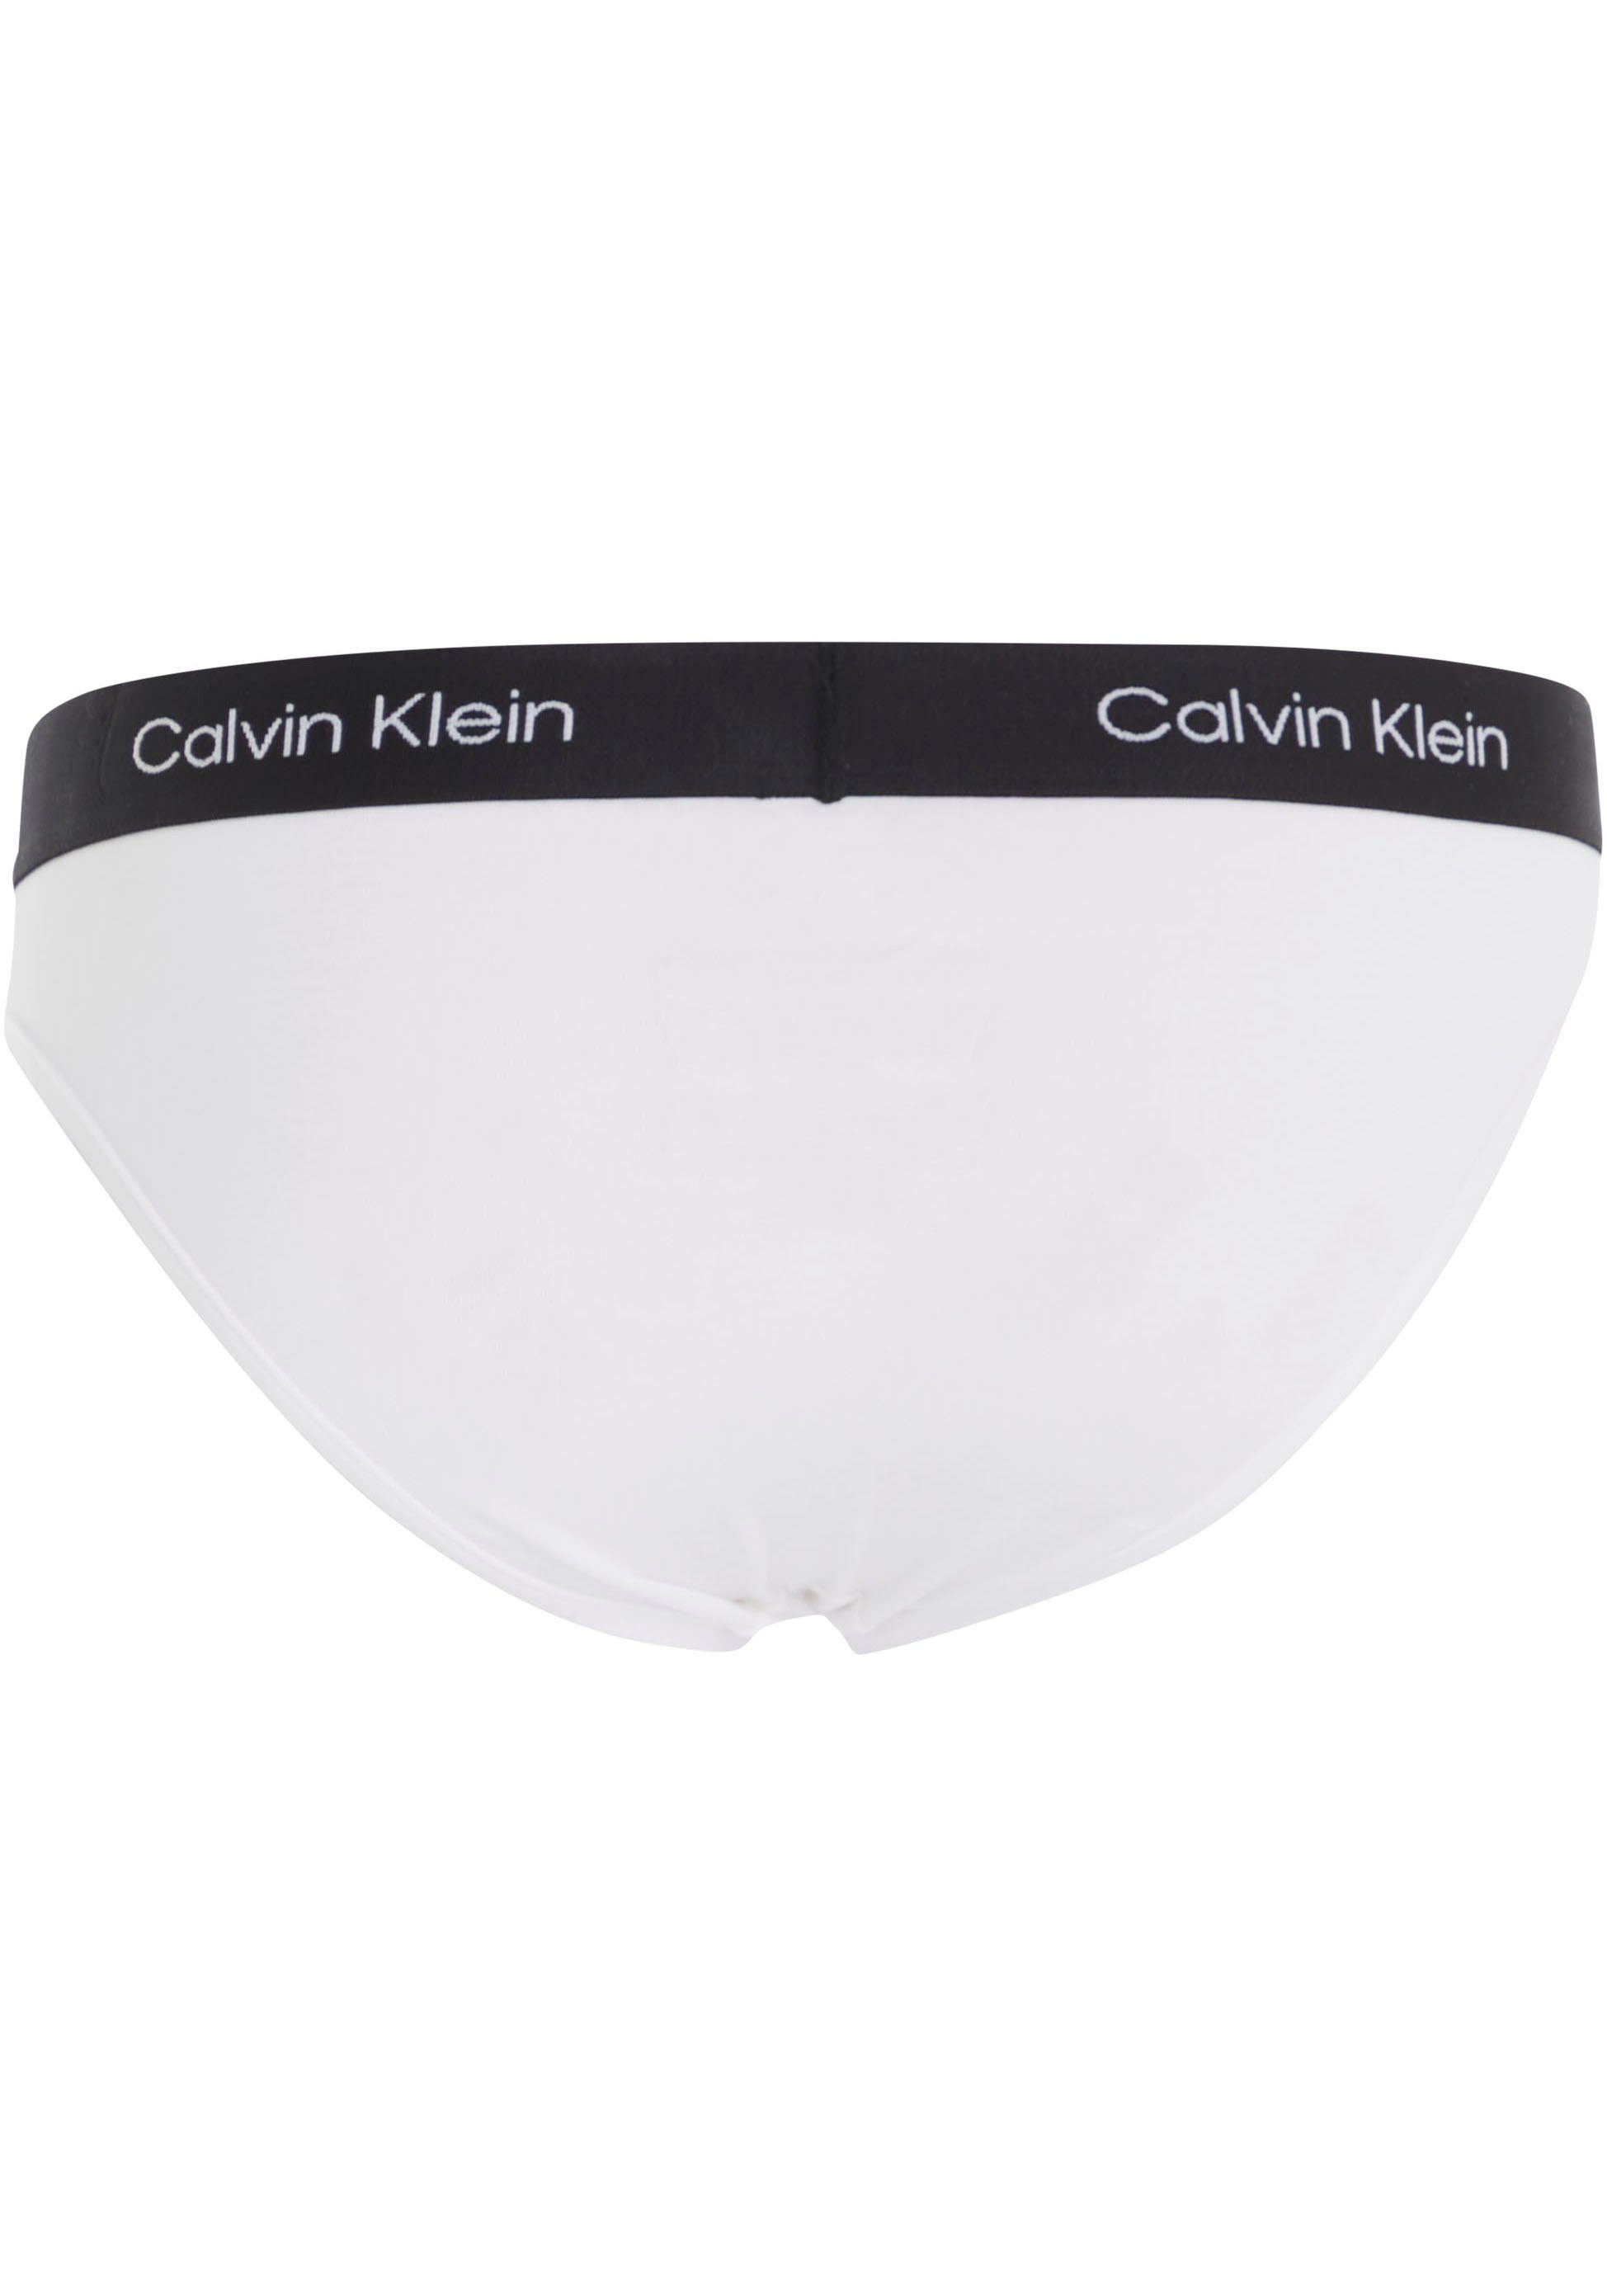 Underwear Bikinislip weiß Klein Allover-Muster mit Calvin